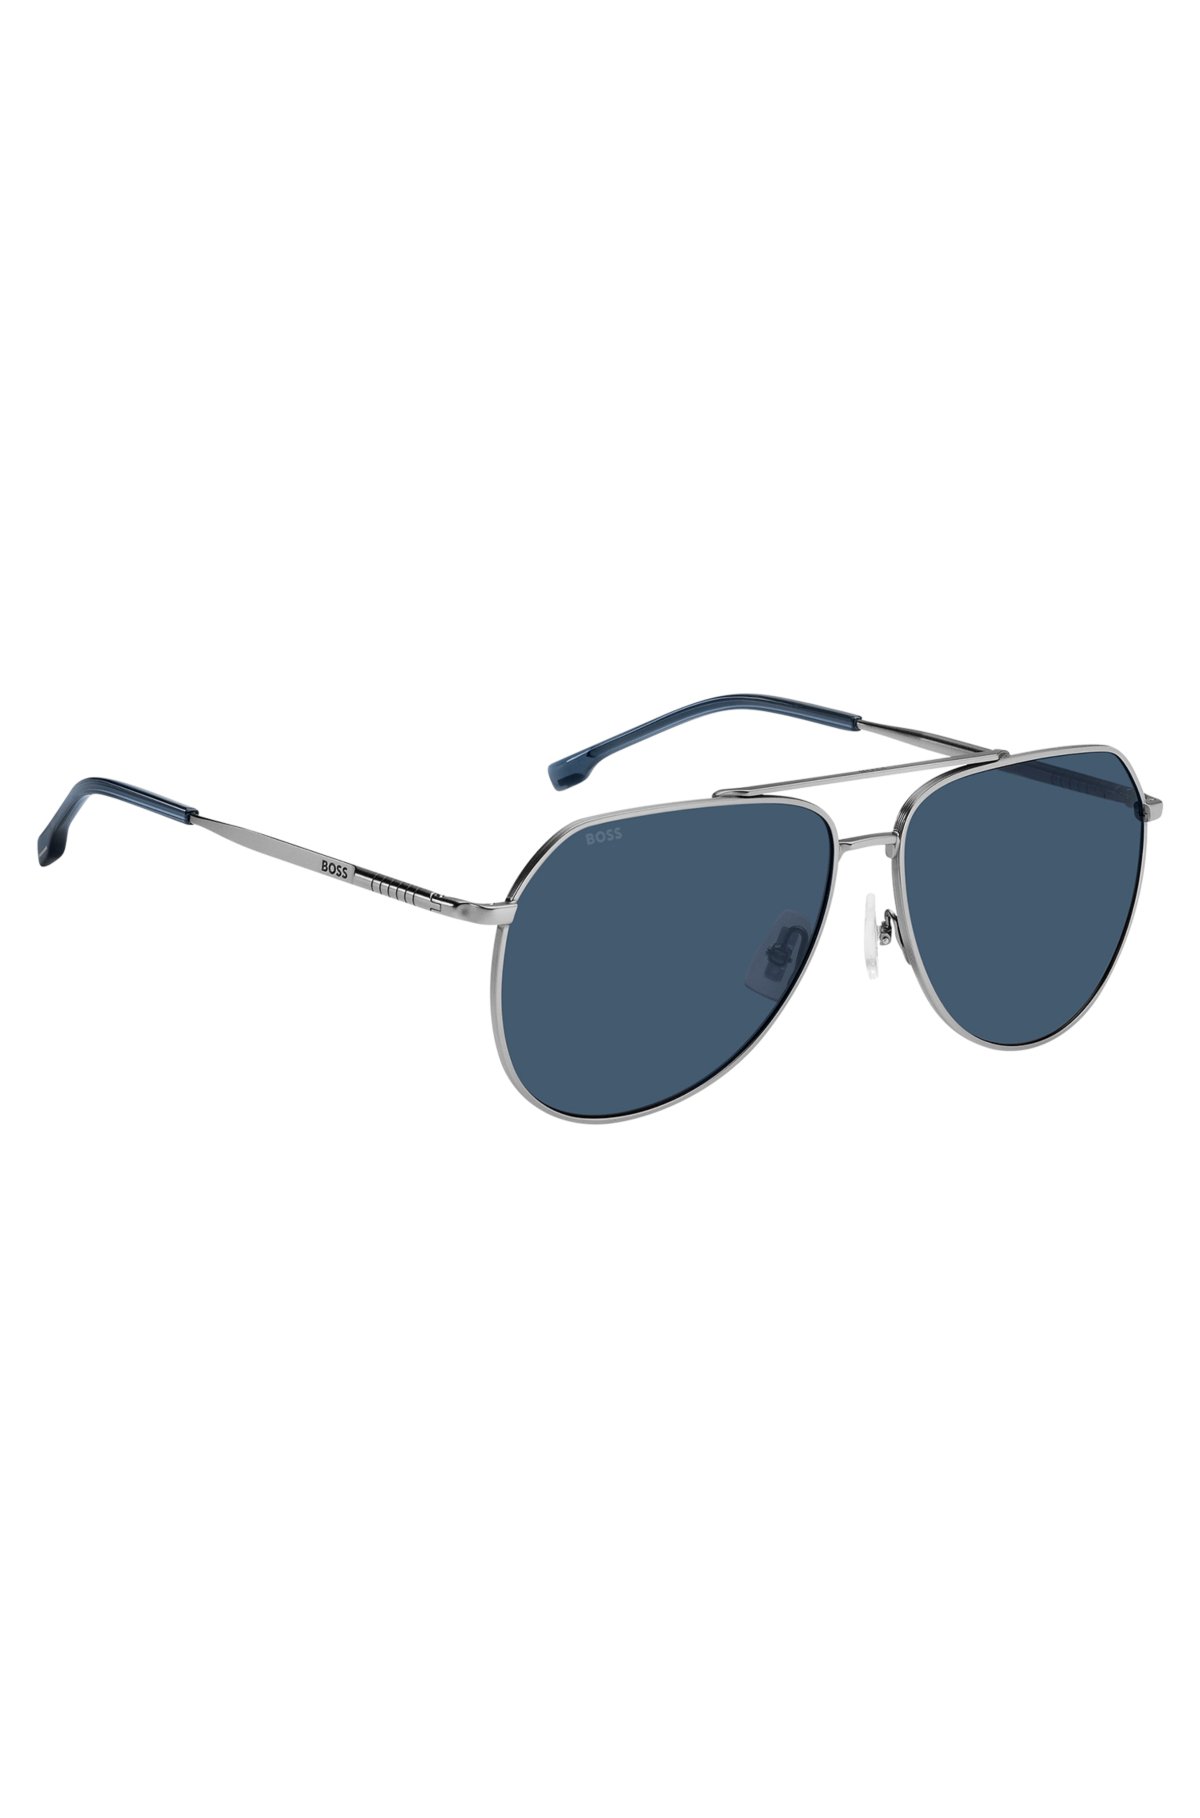 Double-bridge sunglasses with beta-titanium temples